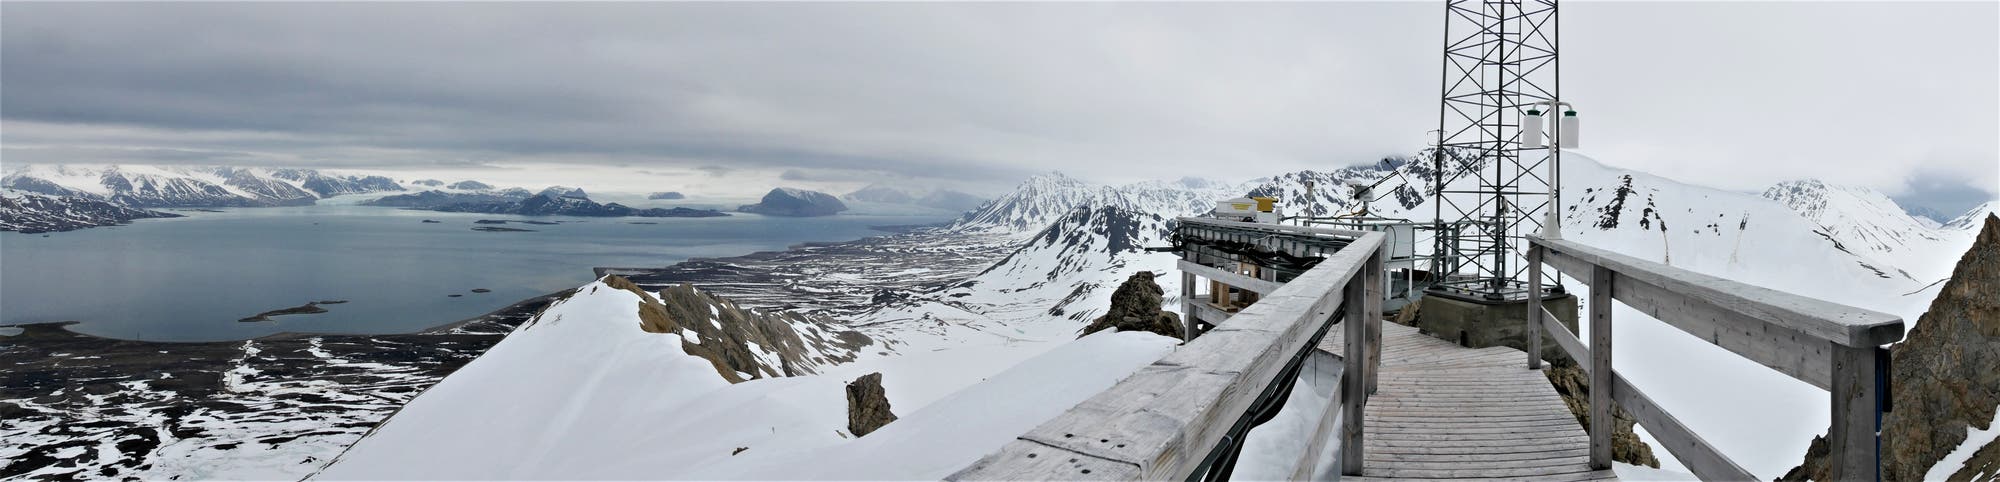 Panoramaaufnahme von der Terrasse des Zeppelin-Bergs über Ny-Ålesund und den Fjord auf Berge und Gletscher am anderen Ufer.